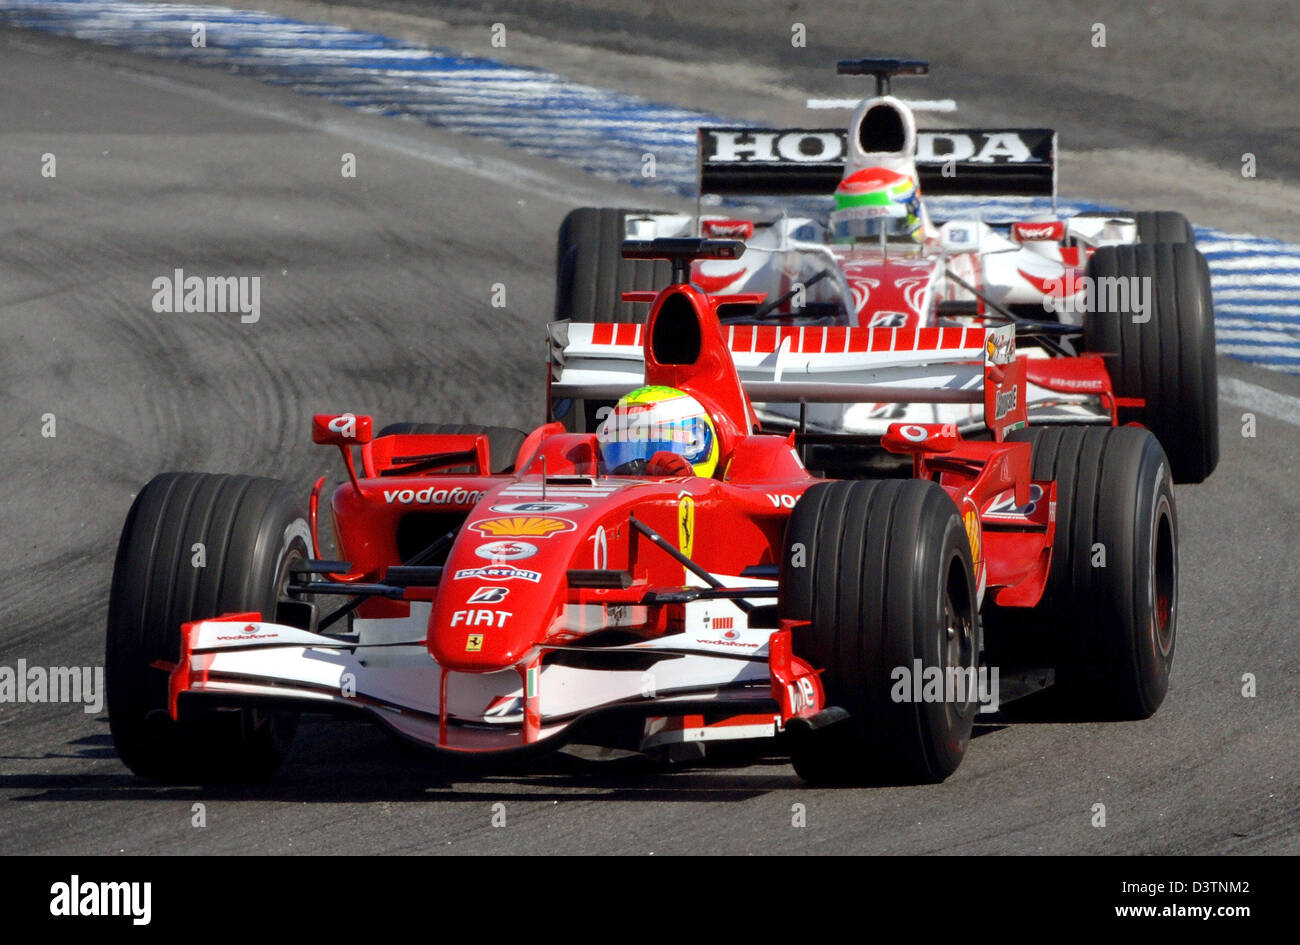 Il brasiliano pilota di Formula Uno Felipe Massa della Scuderia Ferrari F1  team gare in anticipo di giapponese Sakon Yamamoto della Super Aguri F1  team durante il Gran Premio di F1 del